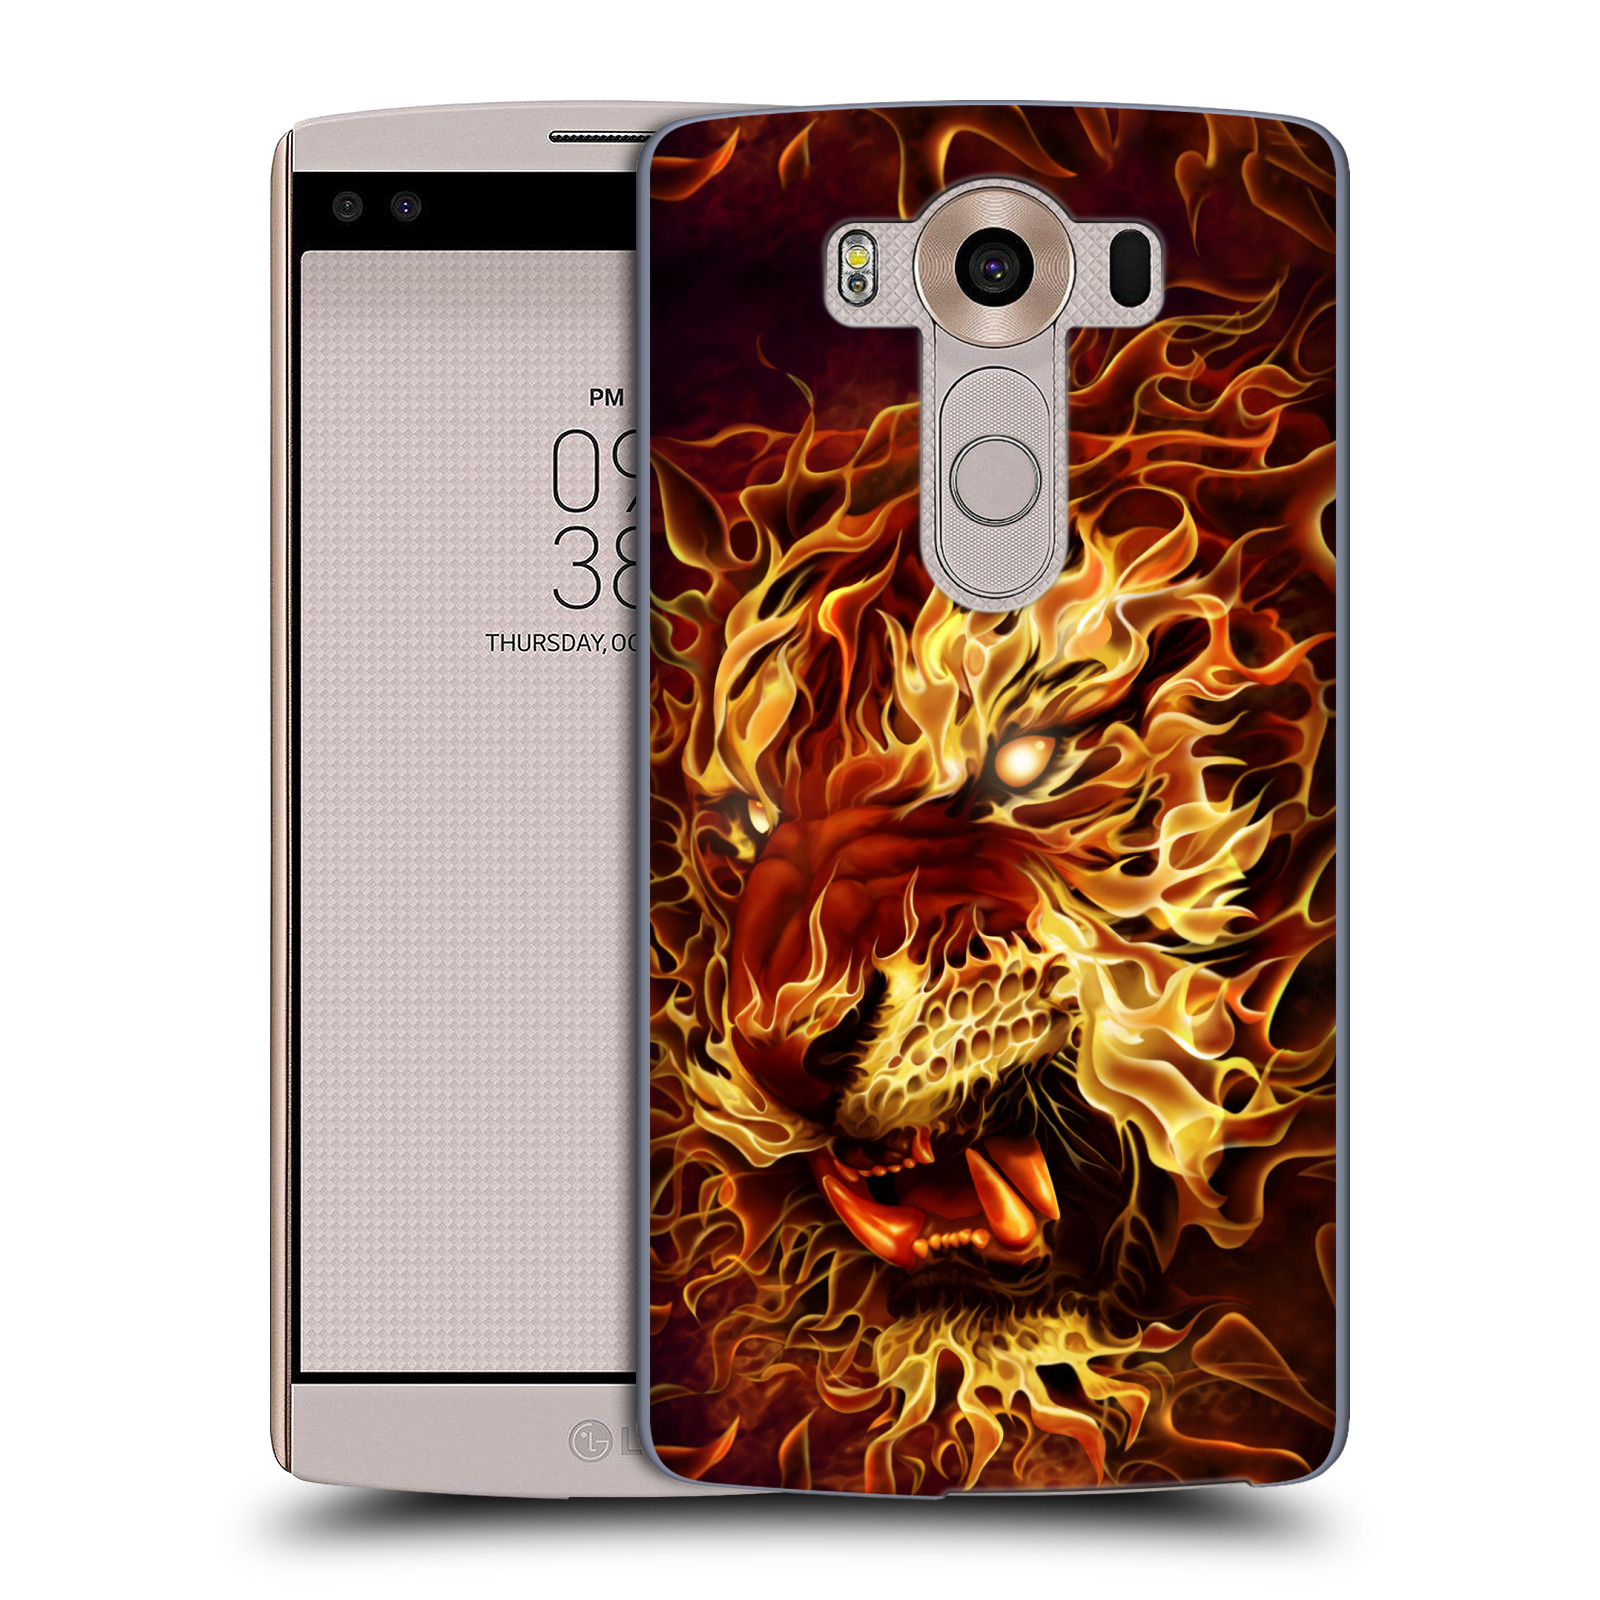 Pouzdro na mobil LG V10 - HEAD CASE - Fantasy kresby Tom Wood - Ohnivý tygr